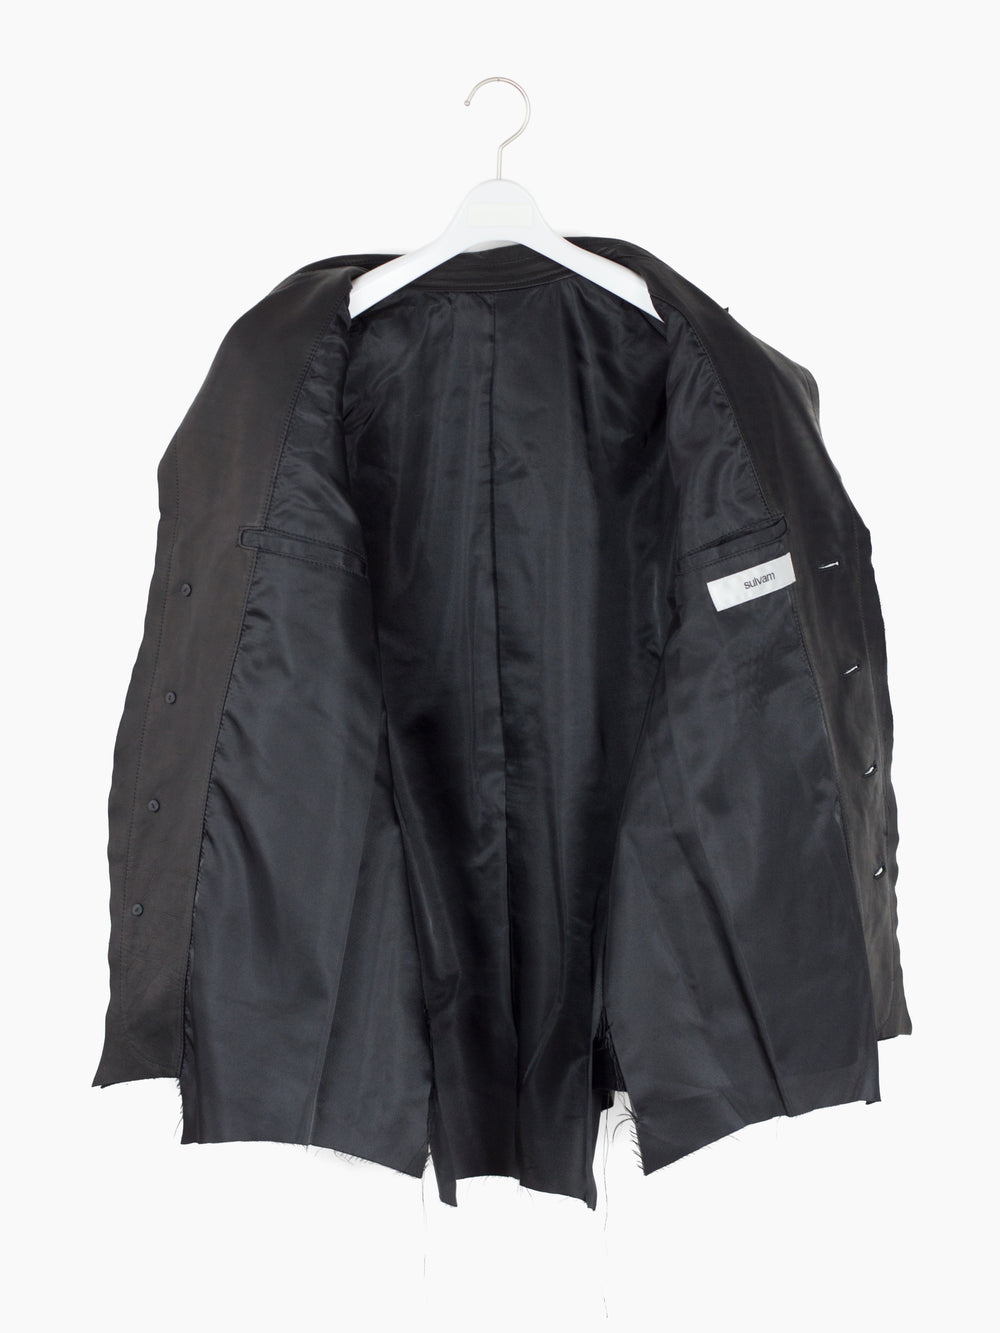 Sulvam AW23 Scarred Horse Leather Fringe Jacket